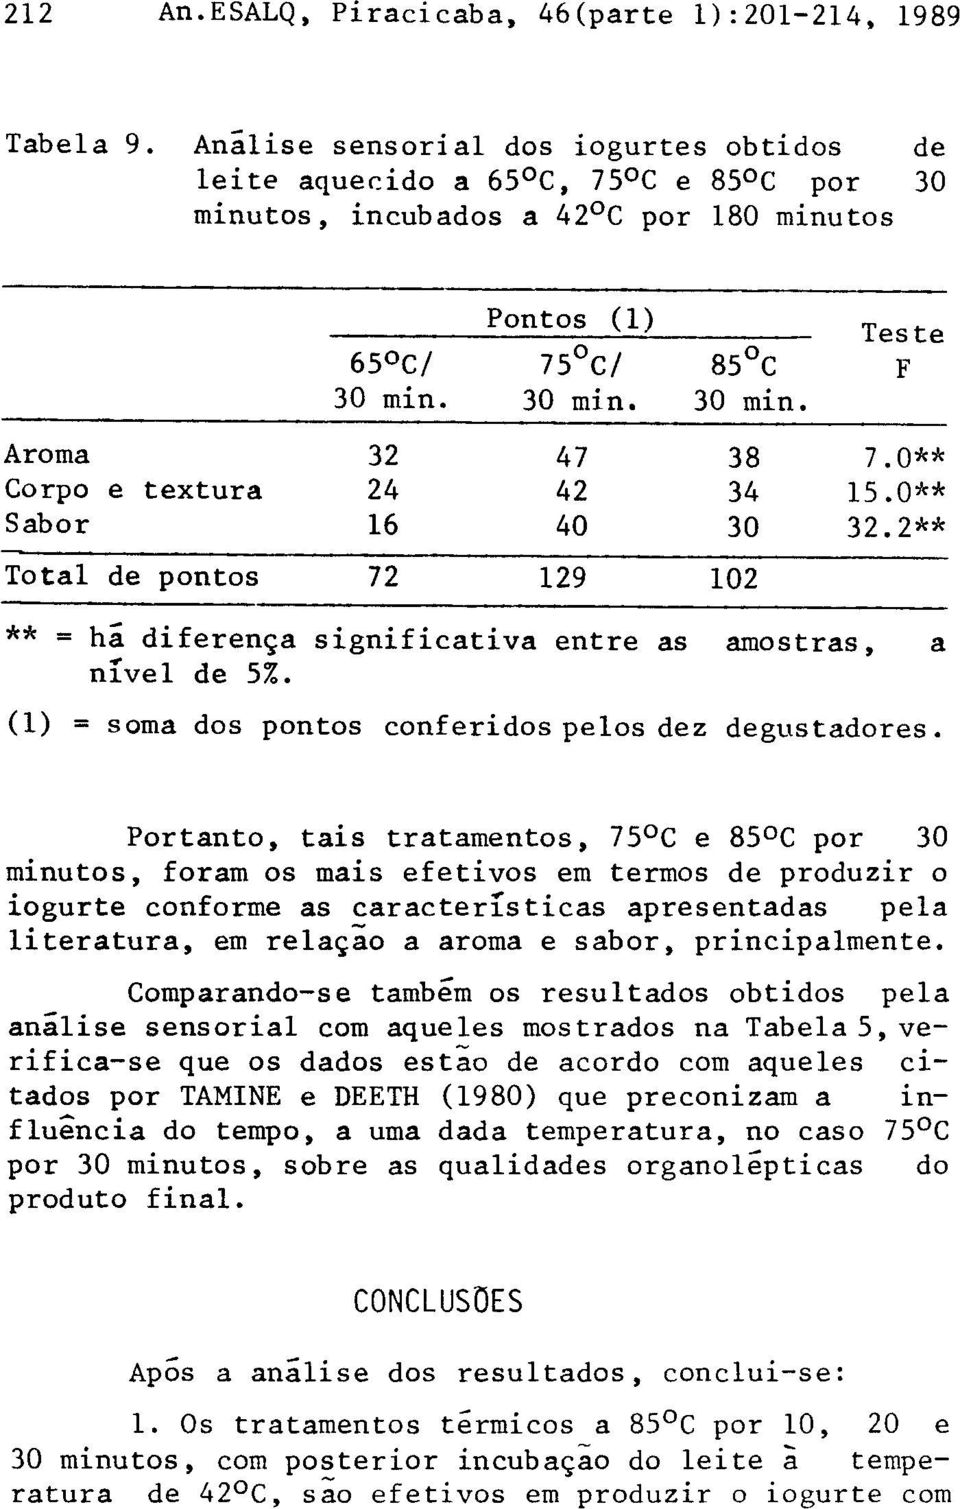 Comparando-se também os resultados obtidos pela análise sensorial com aqueles mostrados na Tabela 5, verifica-se que os dados estão de acordo com aqueles citados por TAMINE e DEETH (1980)